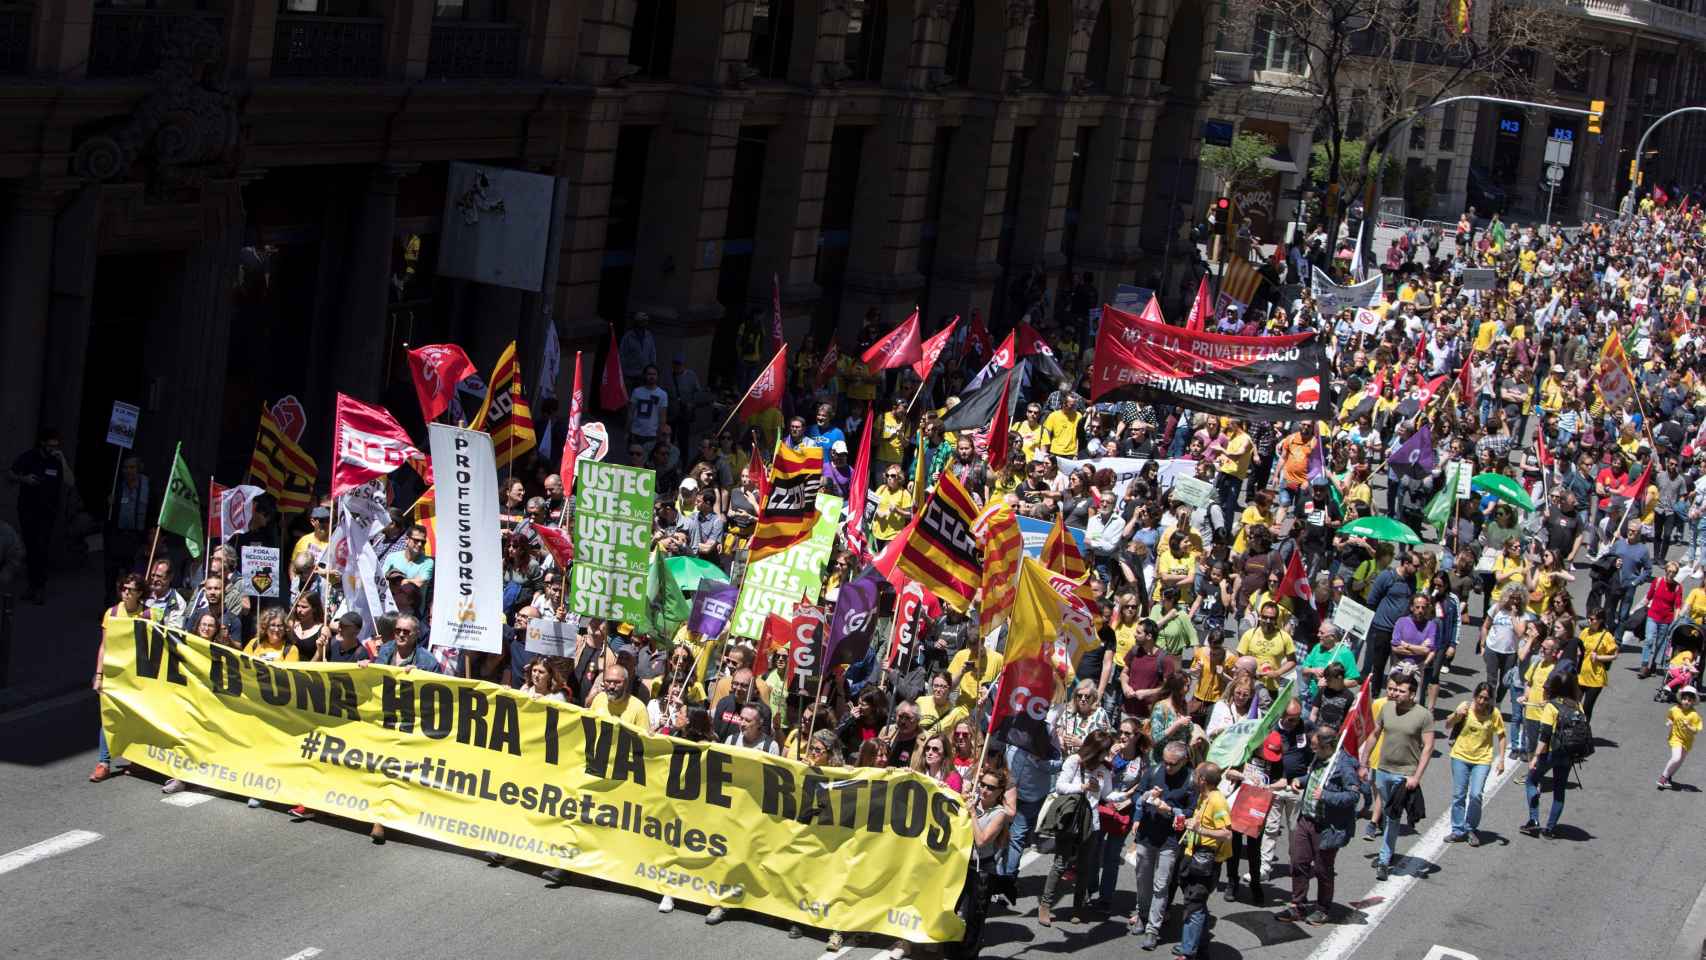 Más de 2.000 profesores de enseñanza pública no universitaria, recorriendo las calles del centro de Barcelona en una manifestación, dentro de la jornada de huelga para reclamar la vuelta a las condiciones laborales anteriores al año 2010, entre ellas el r